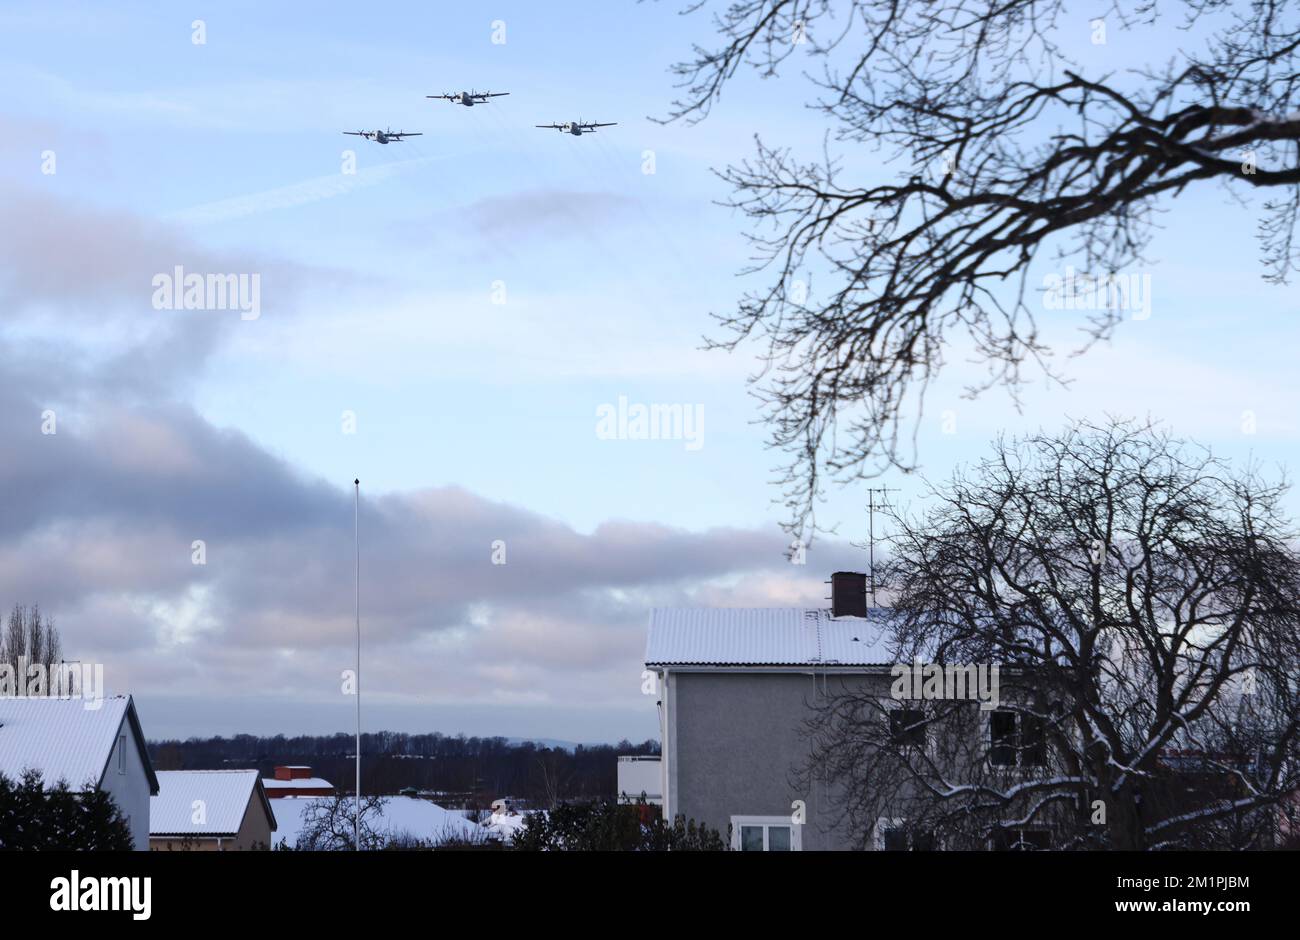 L'avion de transport TP 84 Hercules de la Force aérienne suédoise, de Flygflottilj de Skaraborg, F7 ans, lors d'un vol au-dessus de Motala, mardi. Vol de formation - le vol d'arbre de Noël, est un moyen pour l'armée de l'air de montrer sa présence, en tant que garant de la sécurité des citoyens contre les menaces extérieures, dans des endroits où les forces armées suédoises peuvent ne pas être vues très souvent, écrit les Forces armées suédoises dans un communiqué de presse. Banque D'Images